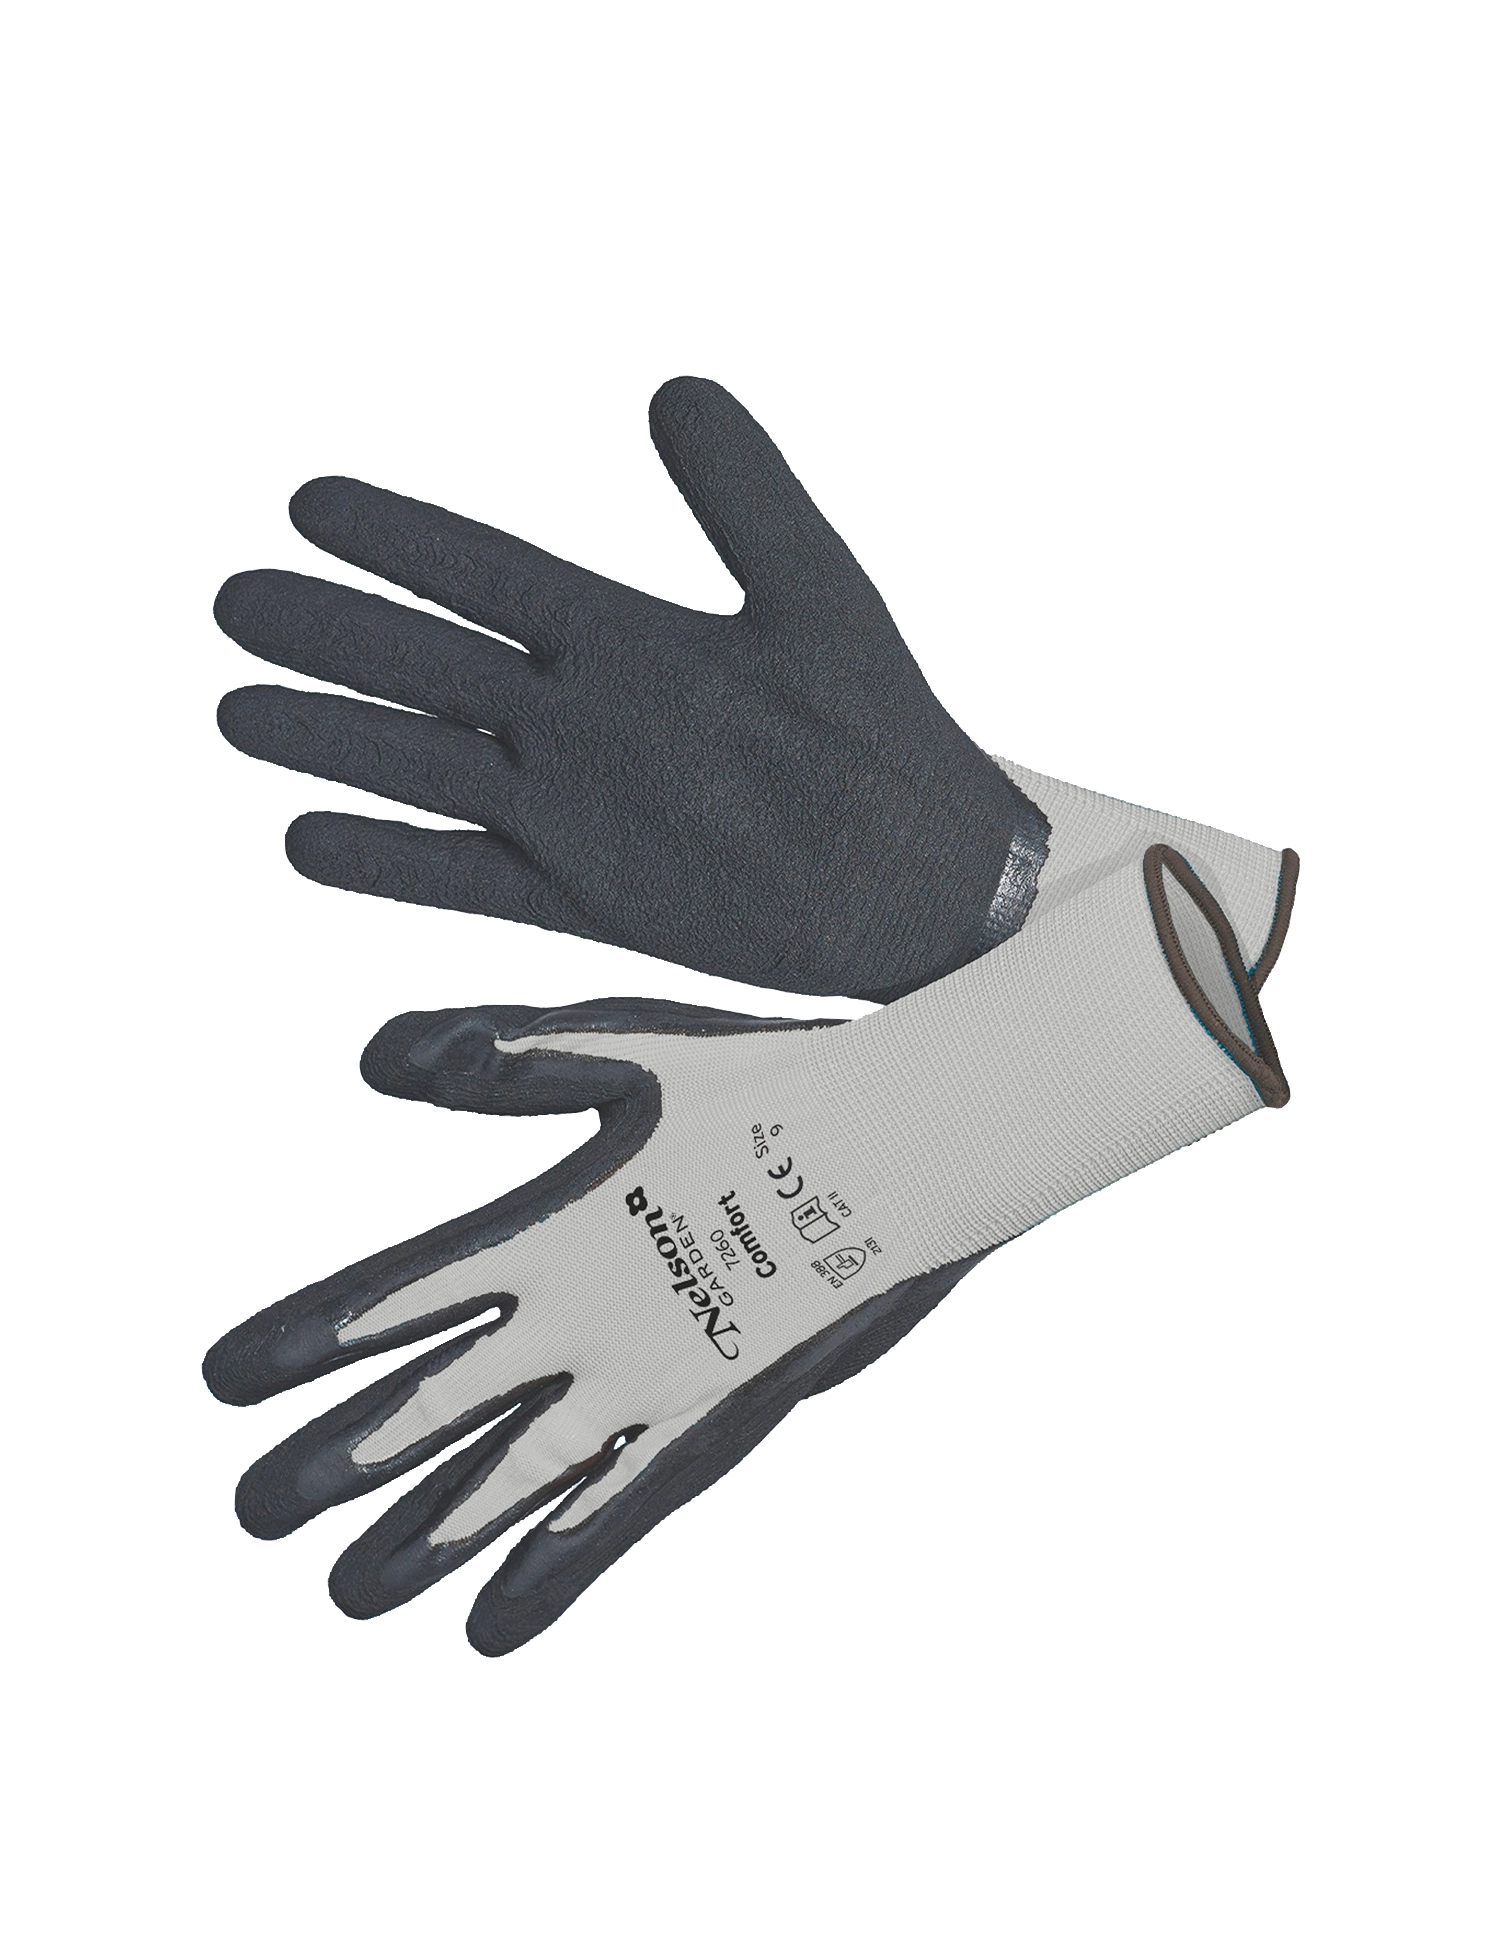 gennemse Ørken undertøj Handske 'Comfort', grå/sort. Str. 8